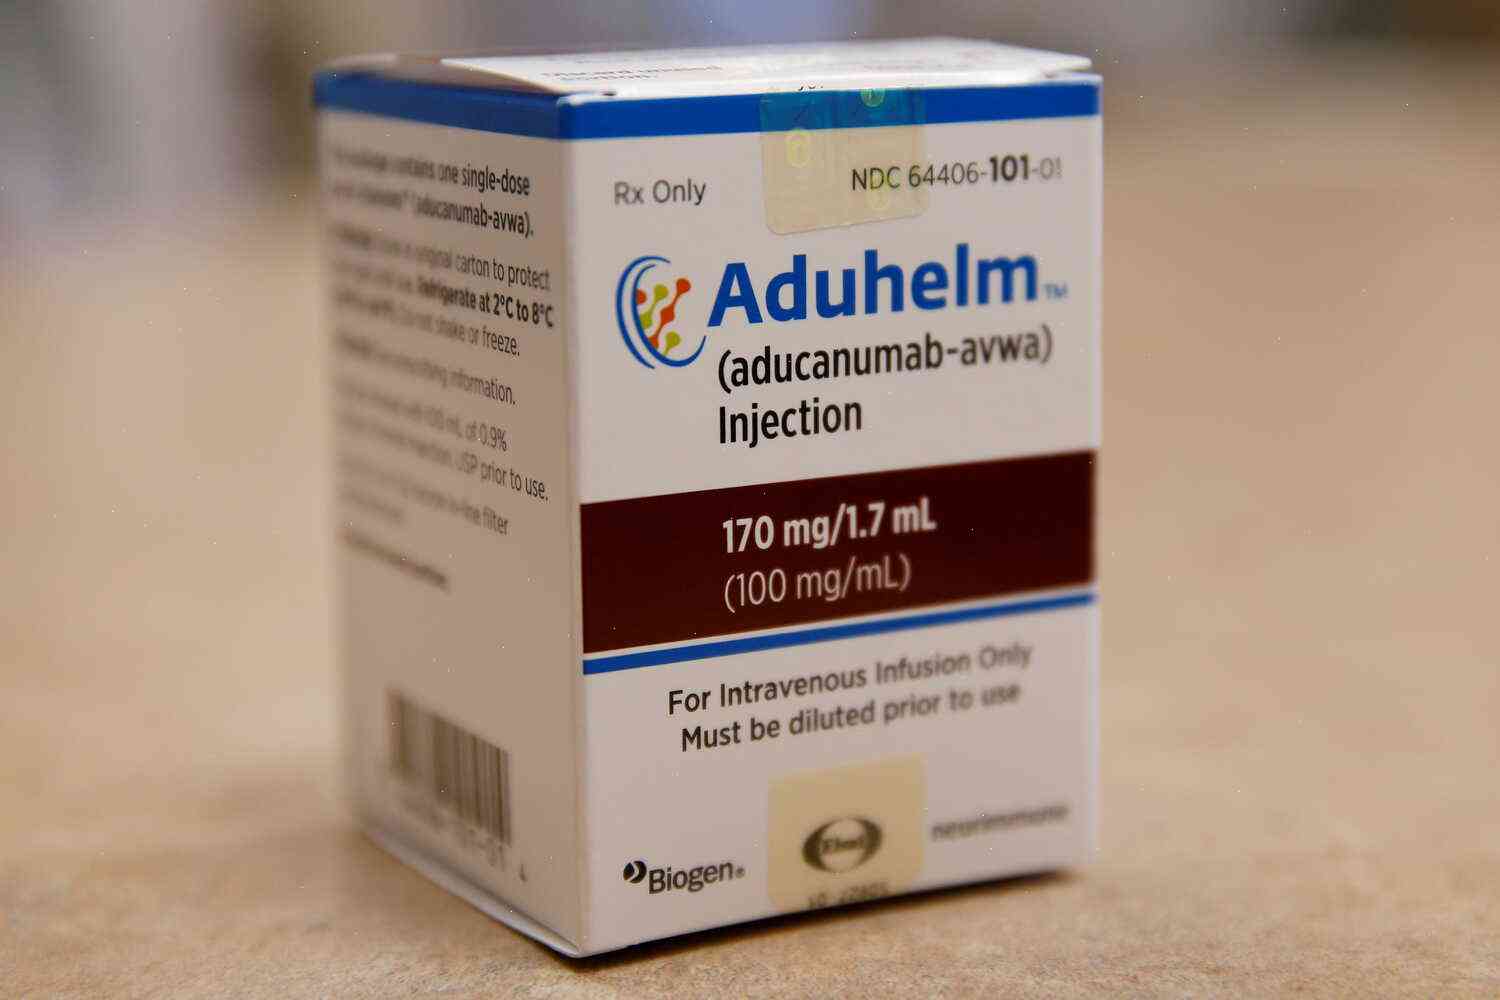 FDA investigates 6 more deaths linked to the cancer drug Aduhelm